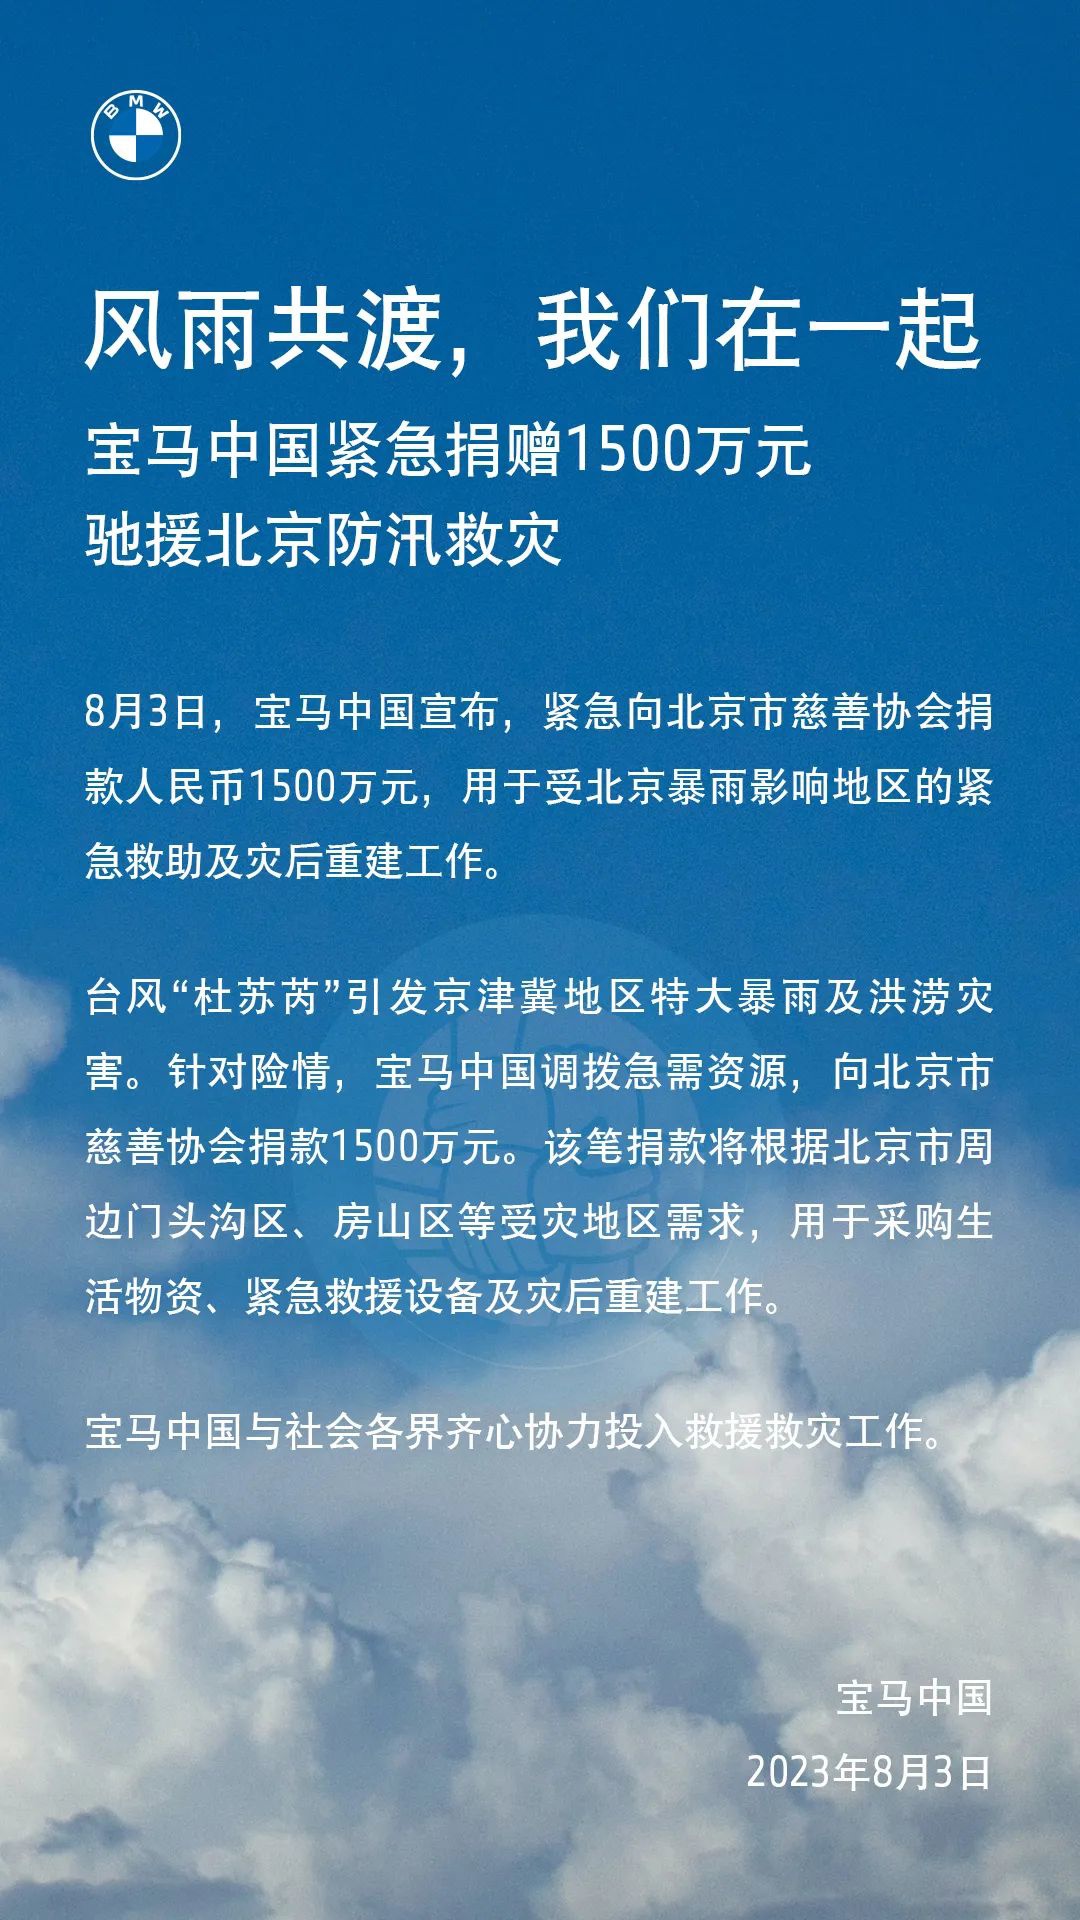 宝马中国紧急捐款 1500 万元支援北京防汛救援工作